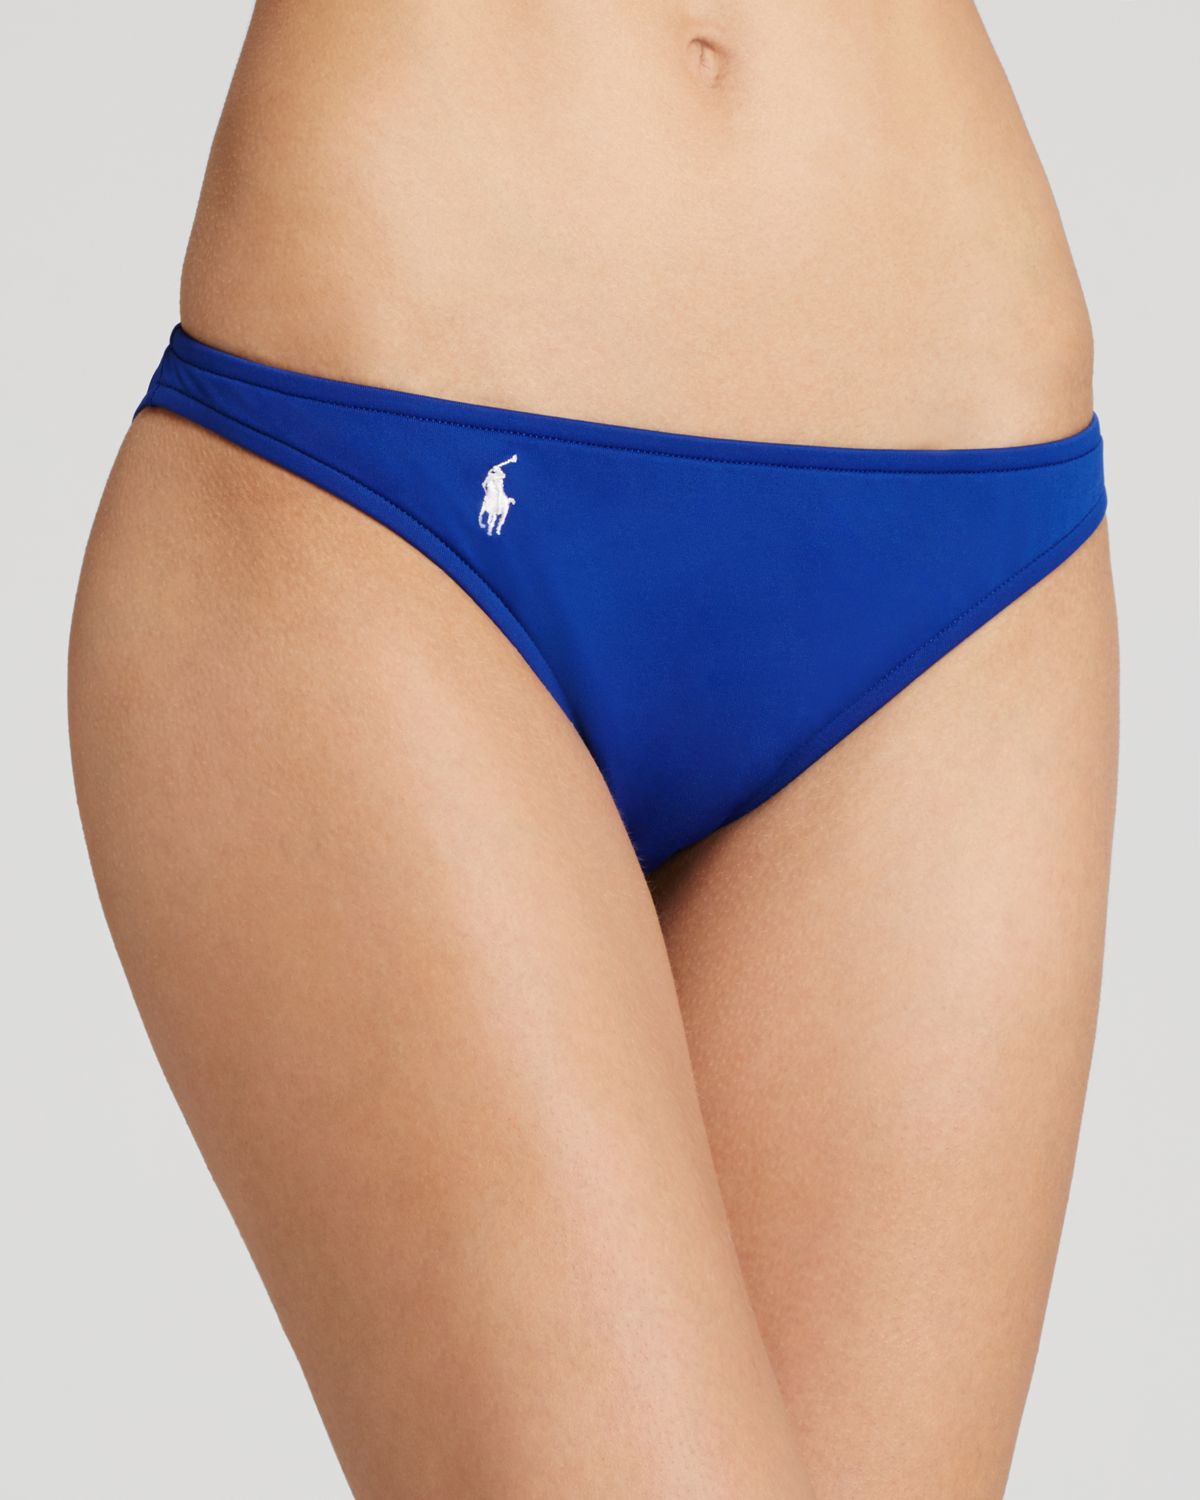 Ebay polo ralph lauren bikini bottoms shorts chart